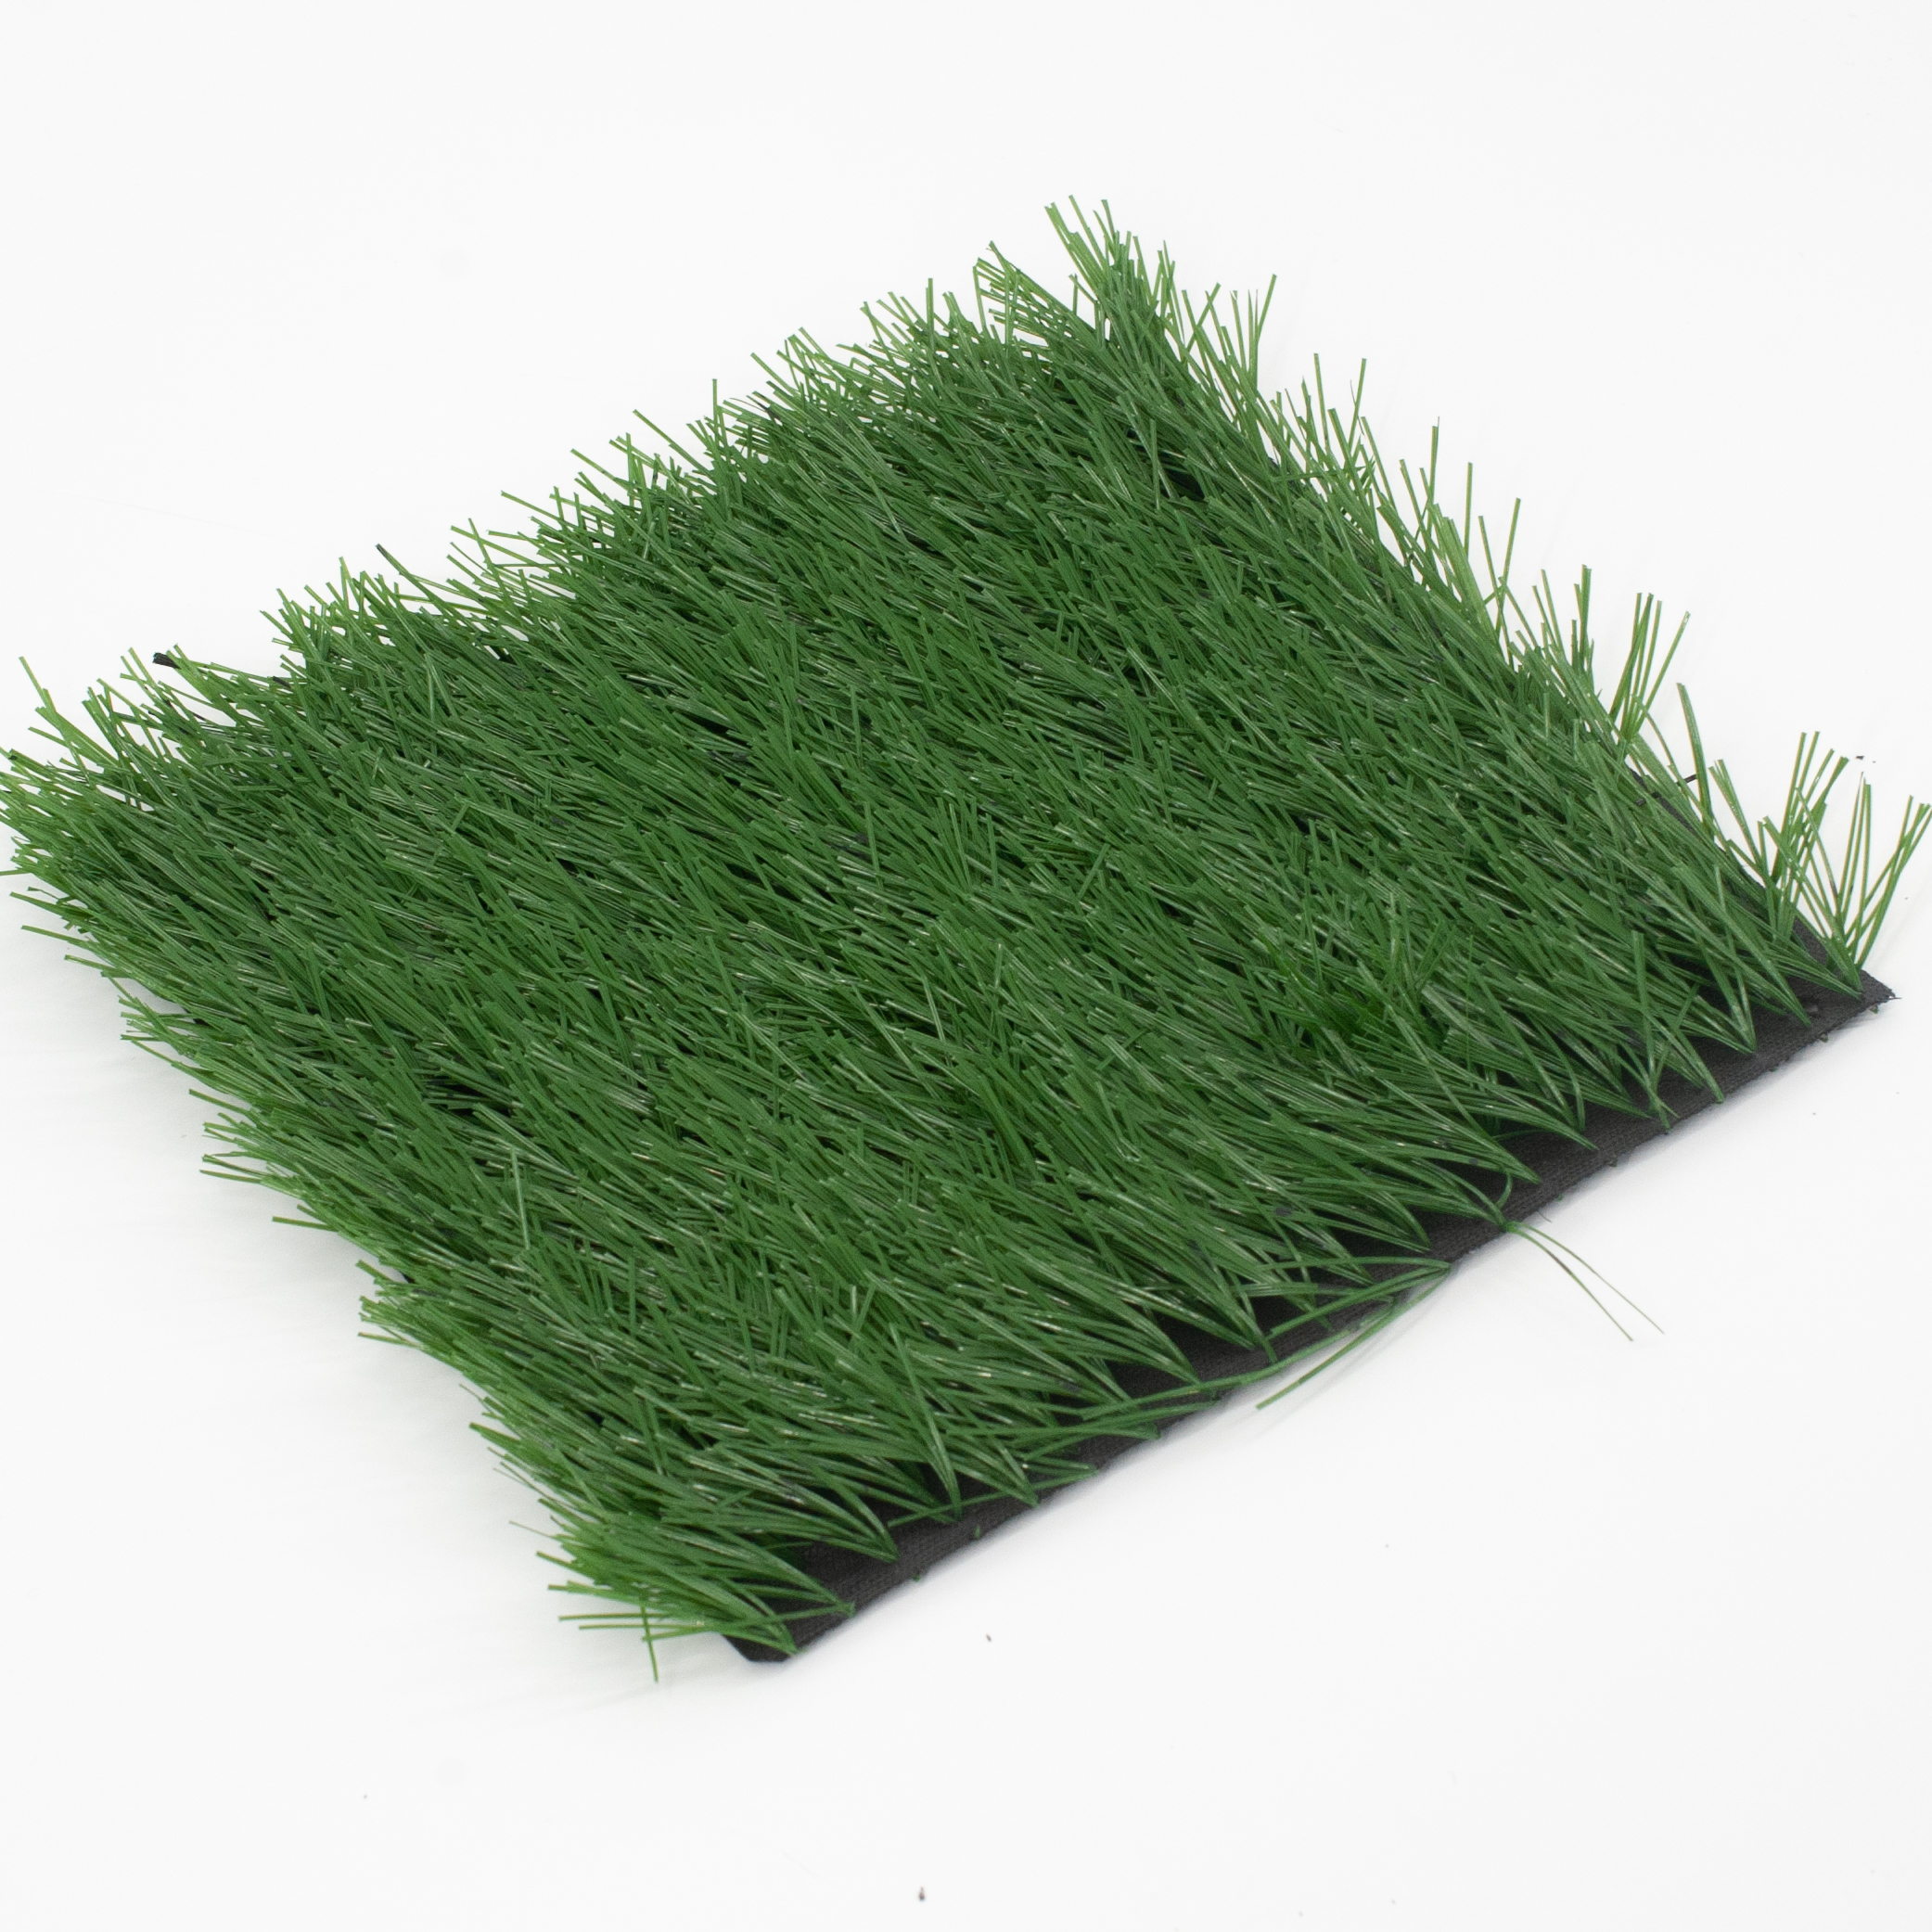 Césped artificial de calidad de 30 mm para campo de fútbol